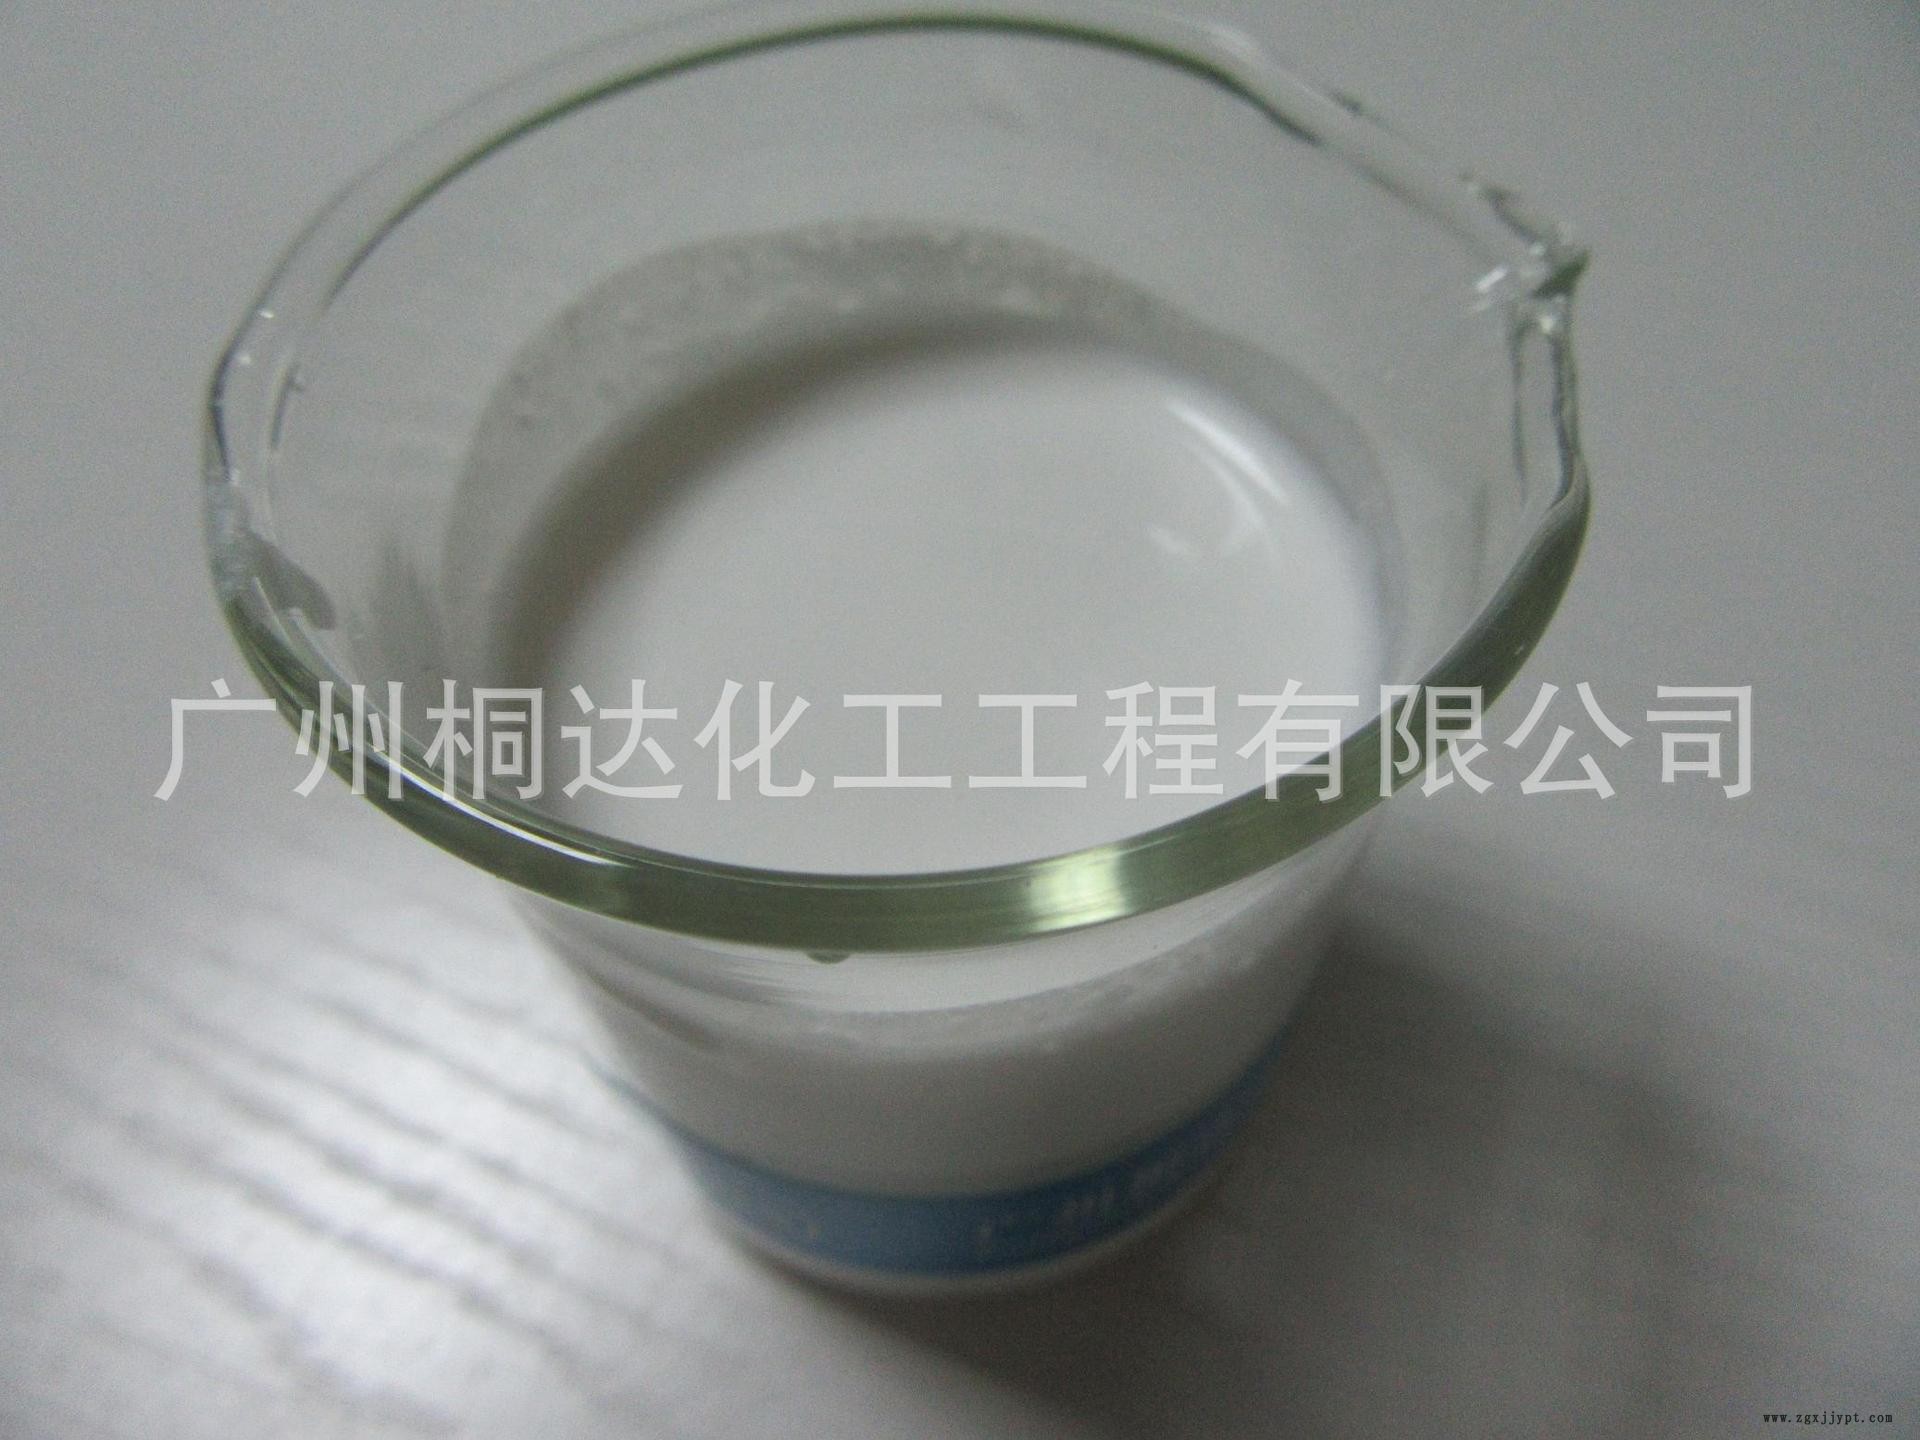 RRJ-211 柔软剂、织物超蓬松柔软剂 适用于纯棉、涤纶、涤棉等示例图3